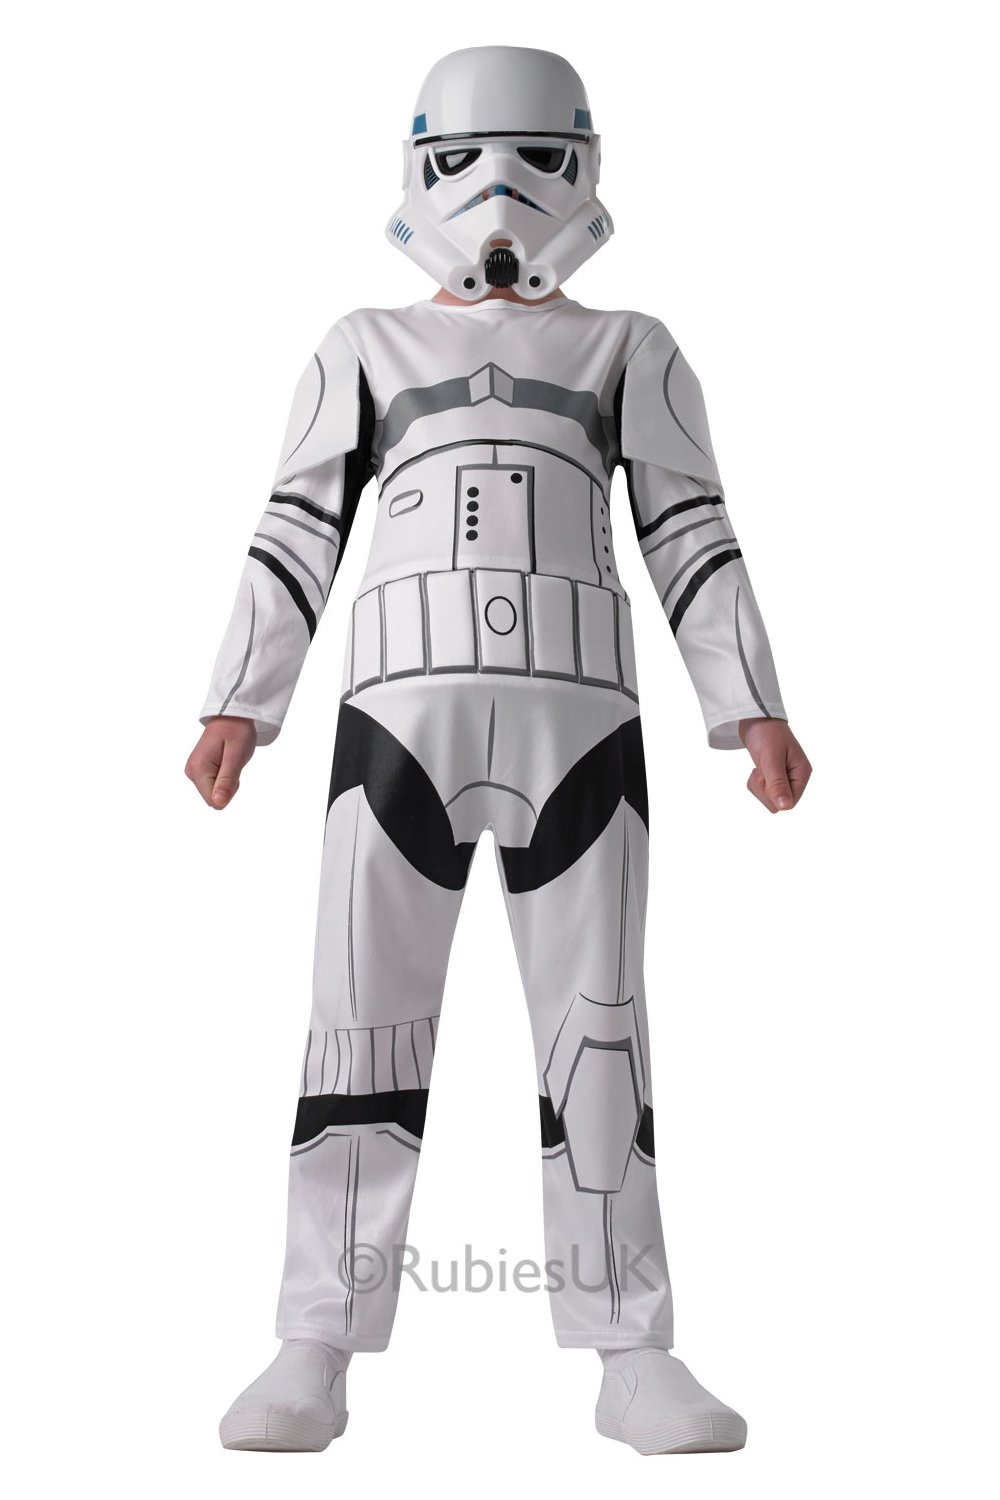 Rubies - Star Wars Costume - Stormtrooper (116 cm) - Leker